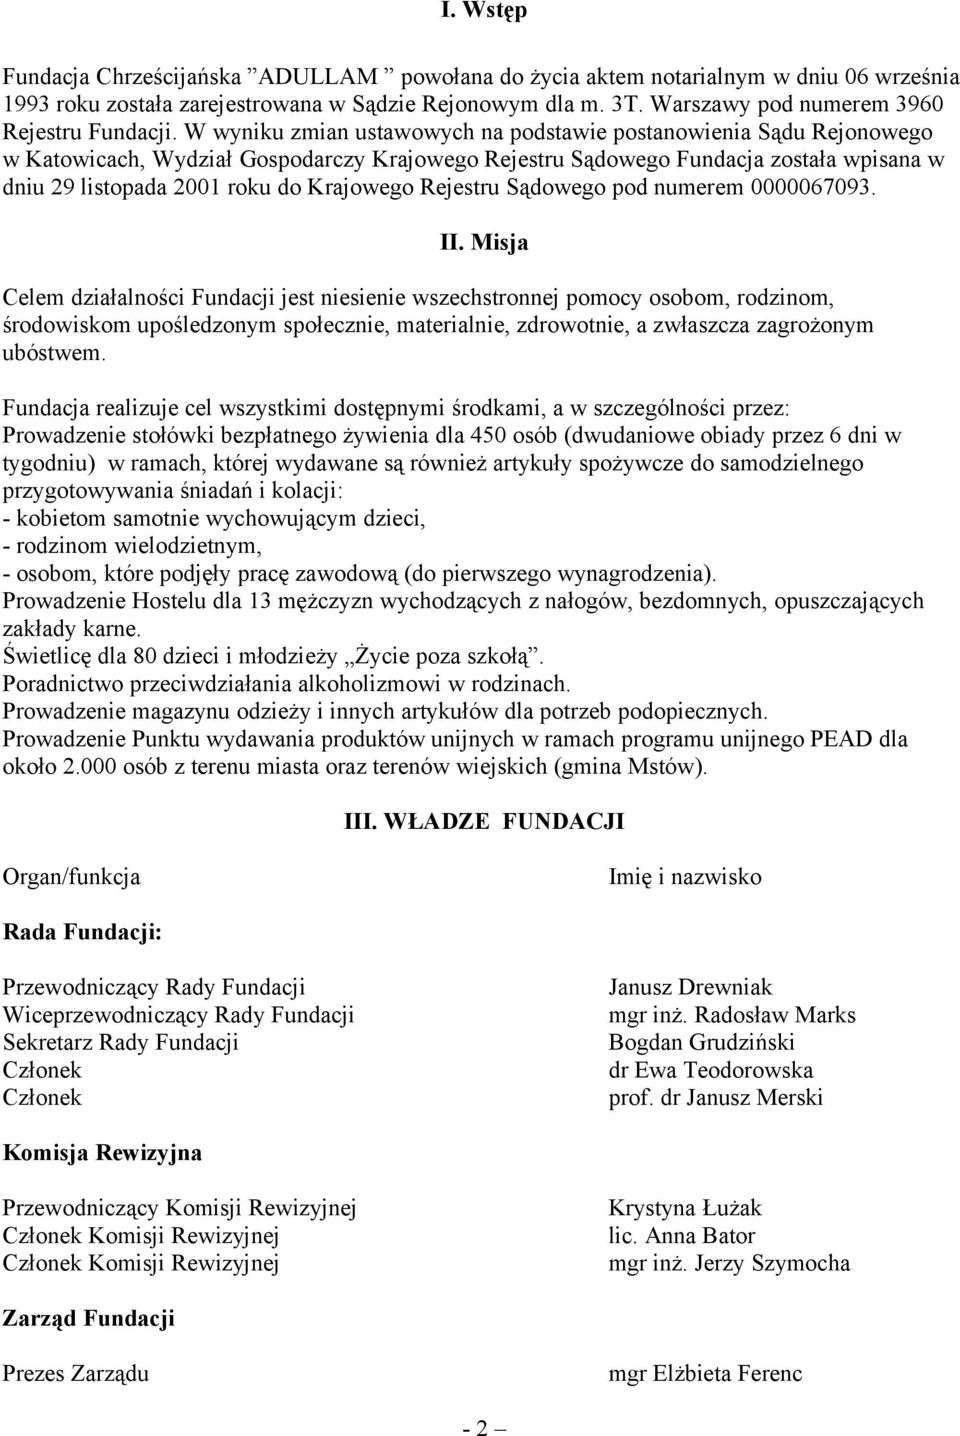 W wyniku zmian ustawowych na podstawie postanowienia Sądu Rejonowego w Katowicach, Wydział Gospodarczy Krajowego Rejestru Sądowego Fundacja została wpisana w dniu 29 listopada 2001 roku do Krajowego